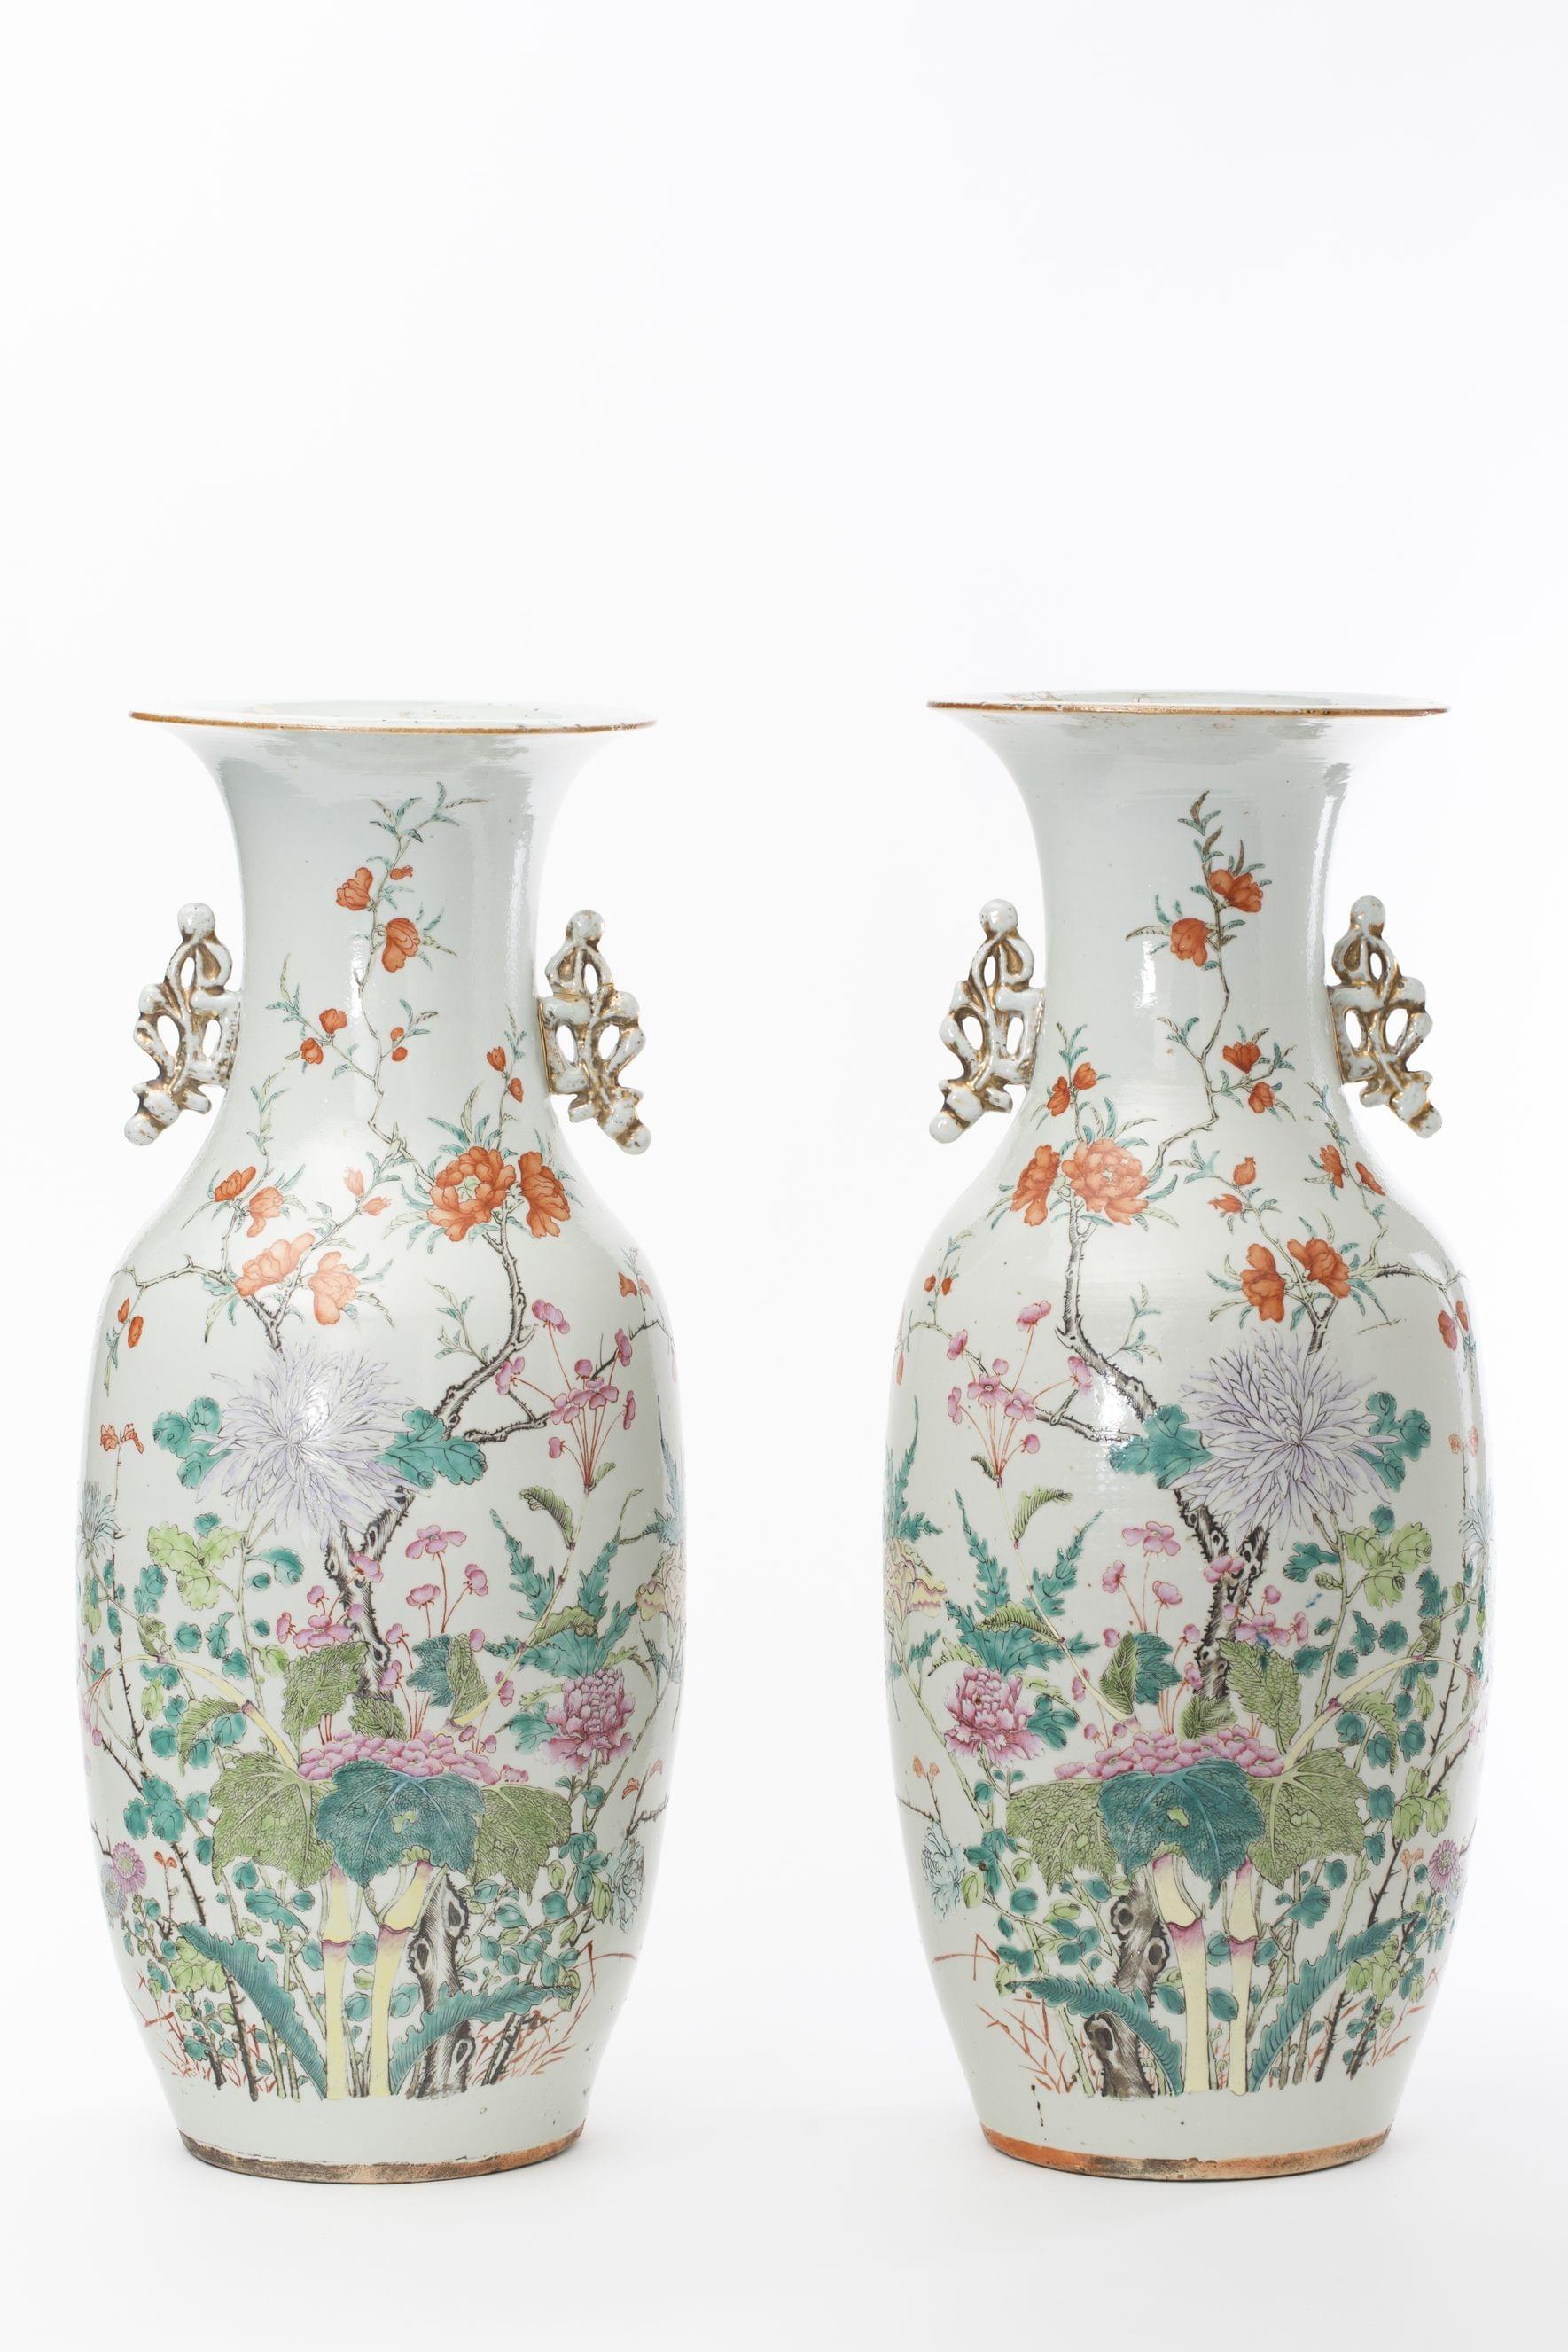 Paire de grands vases balustres, Chine, fin XIXe, début XXe